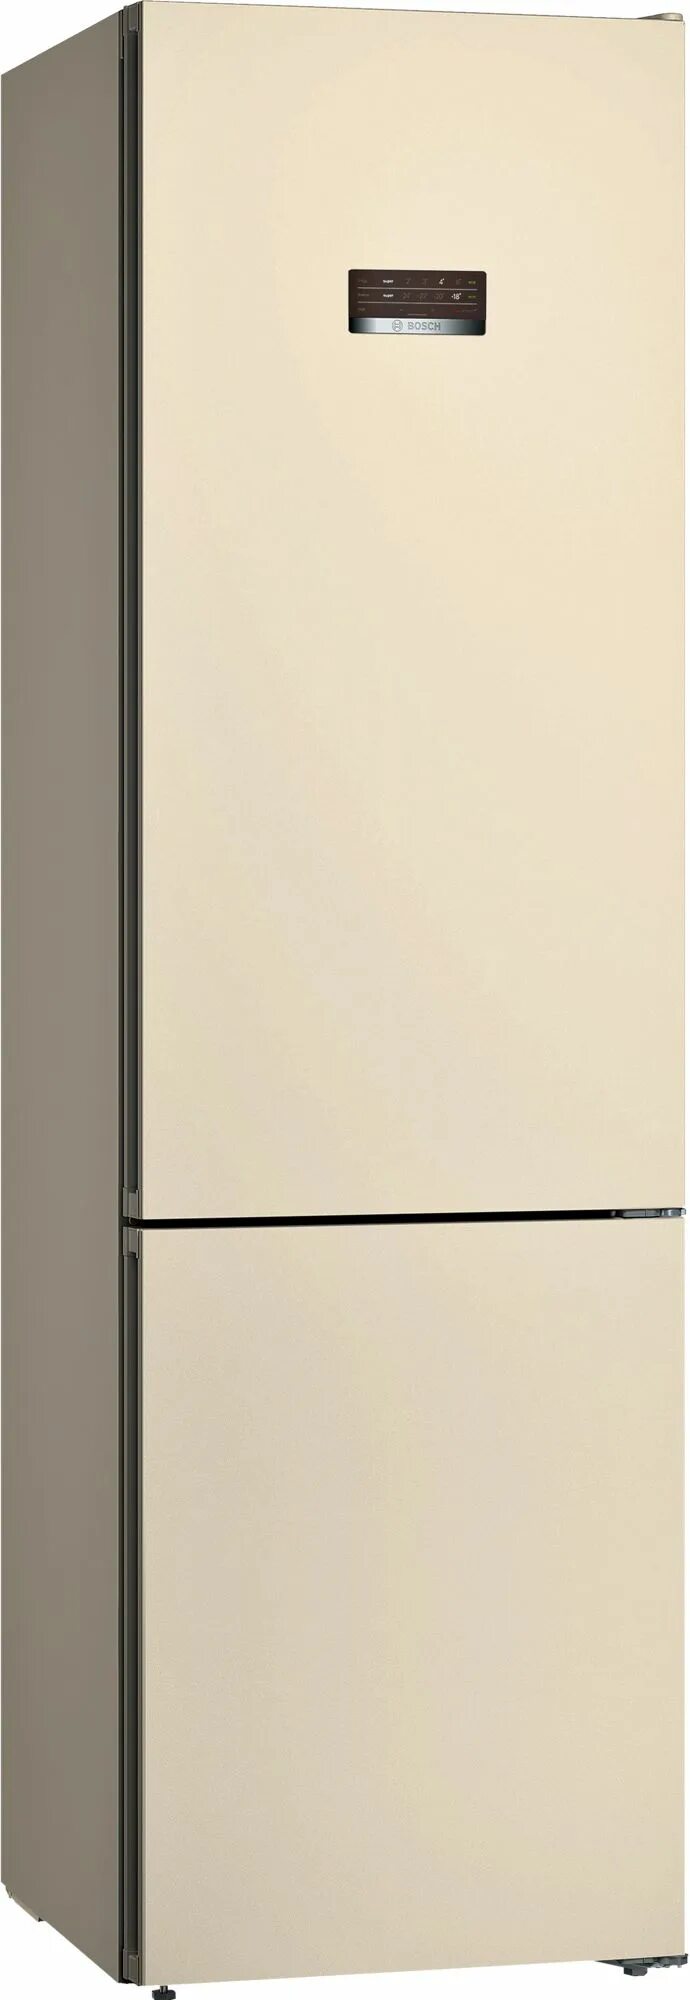 Холодильник слоновая кость. Холодильник Bosch kgv36xk2ar, бежевый. Холодильник Bosch kgn39xk31r. Холодильник Bosch kgn36nk21r. Bosch kgn36nk21r бежевый.